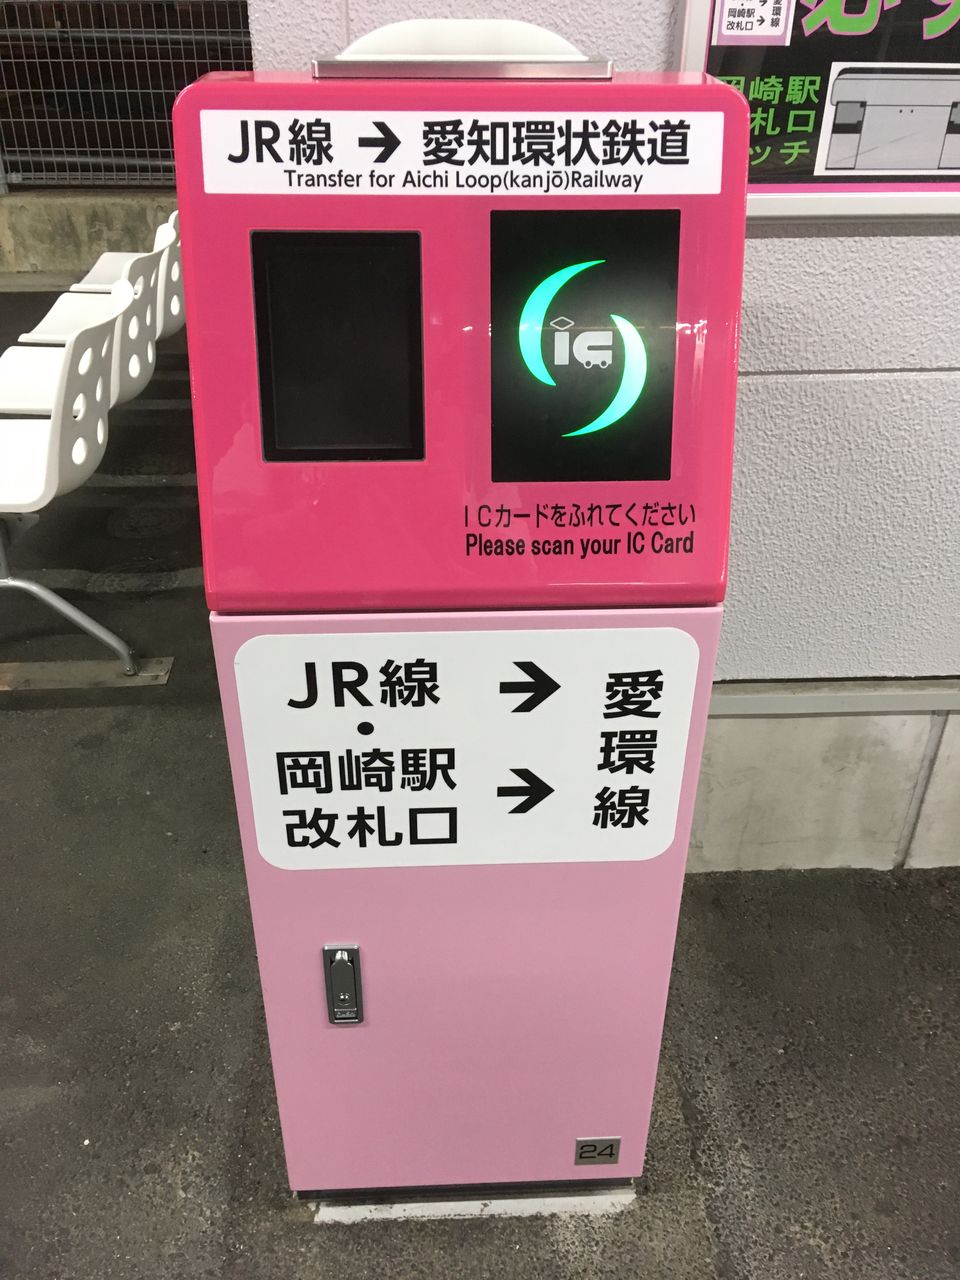 番外編 Icカードで岡崎駅のjr 愛環への乗り換えについて 駅務機器調査ブログ